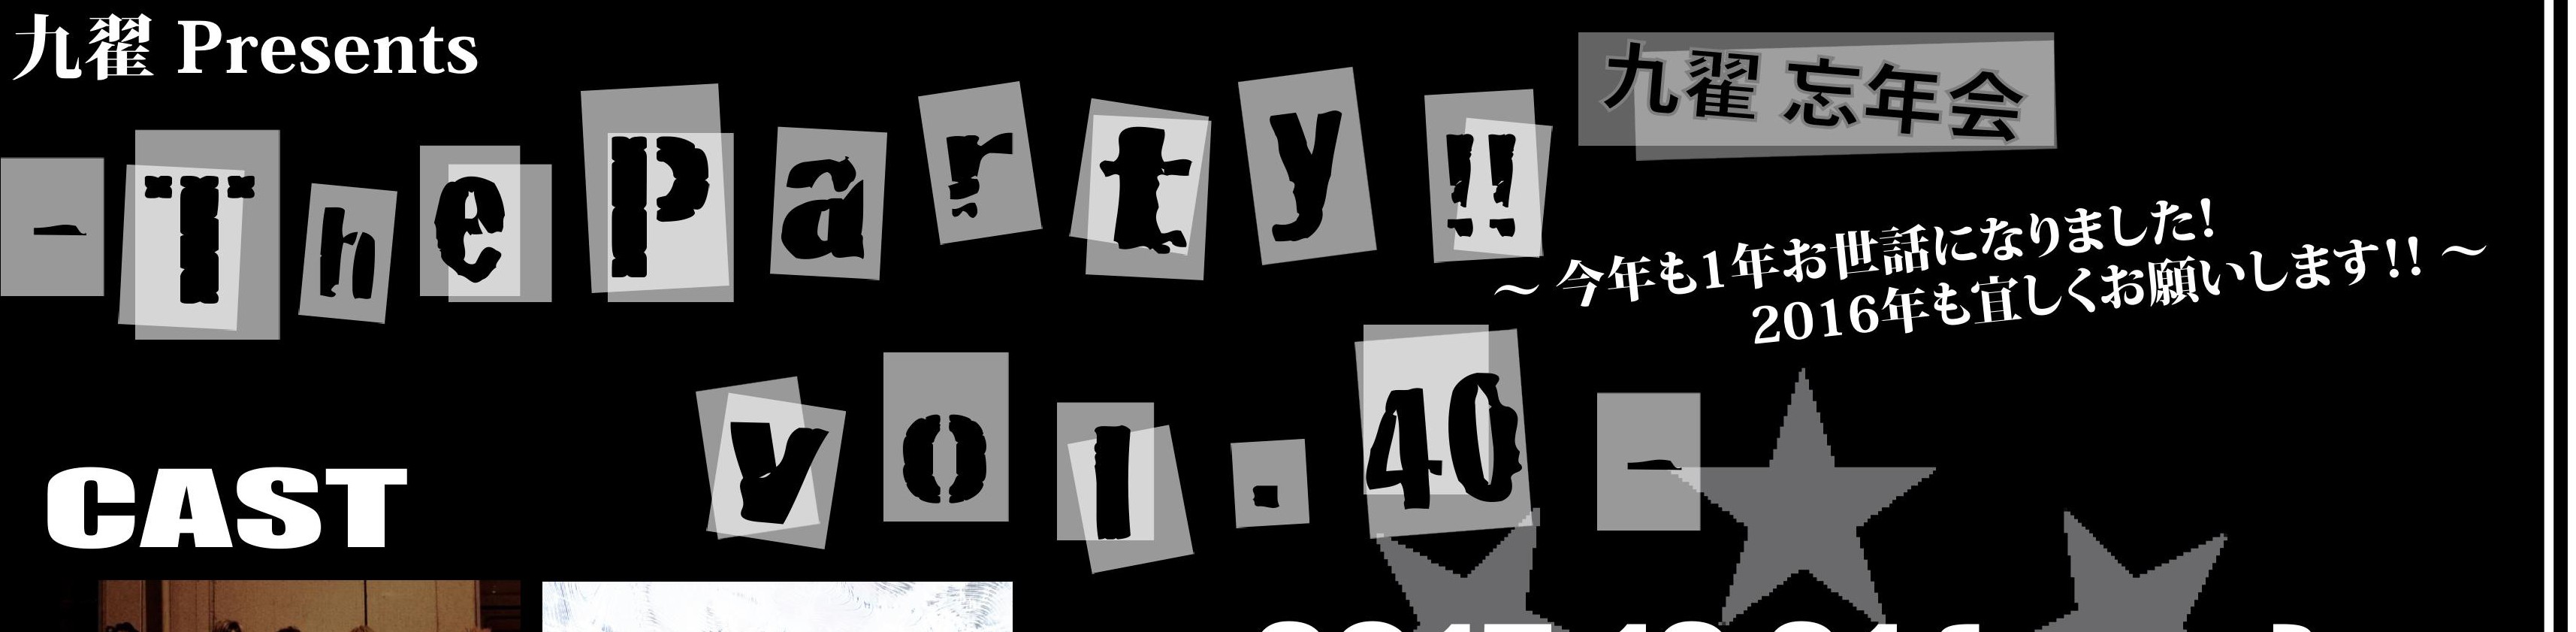 九翟 Presents 『 九翟 忘年会 – The Party!! vol.40 – 』       – 今年も1年お世話になりました!2016年も宜しくお願いします!! –